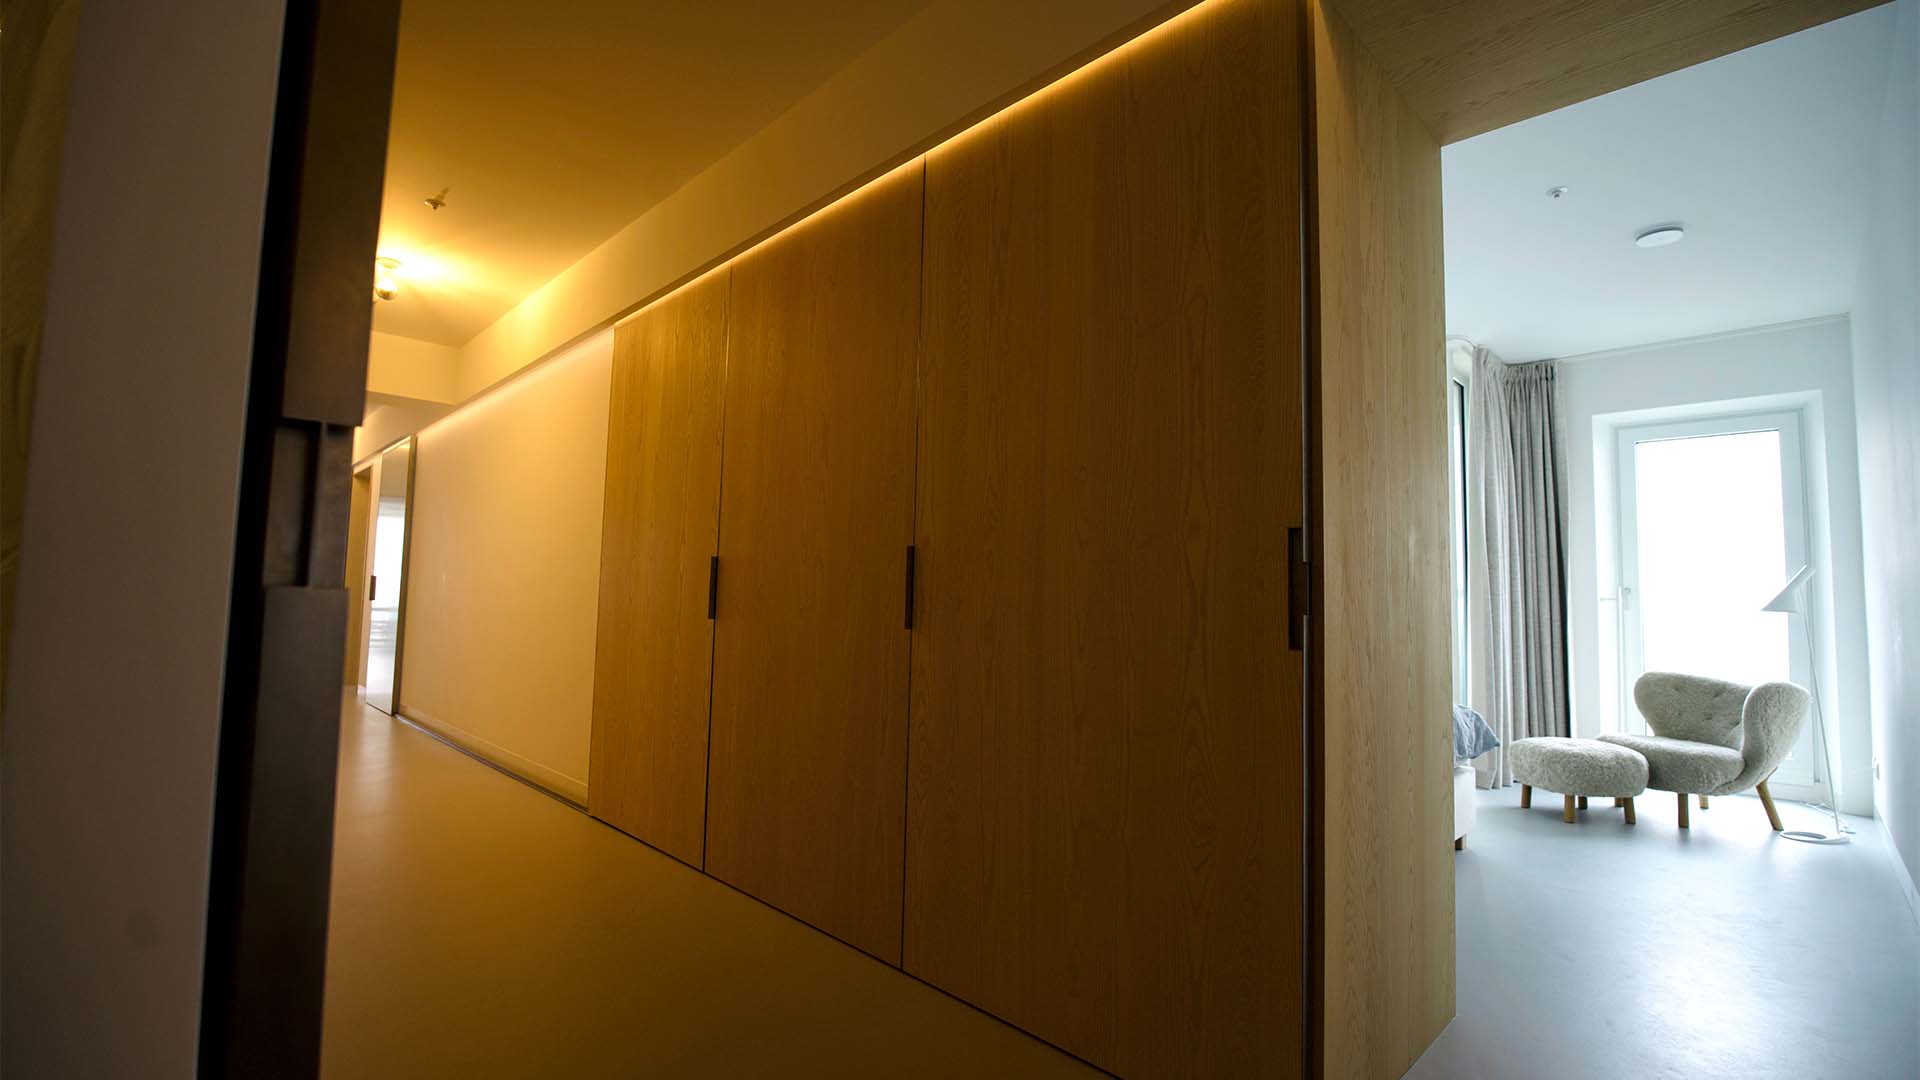 Maaskant meubel- en interieurbouw - projecten - wonen - Zalmhaventoren - Rotterdam - appartement - kastenwand - slaapkamer